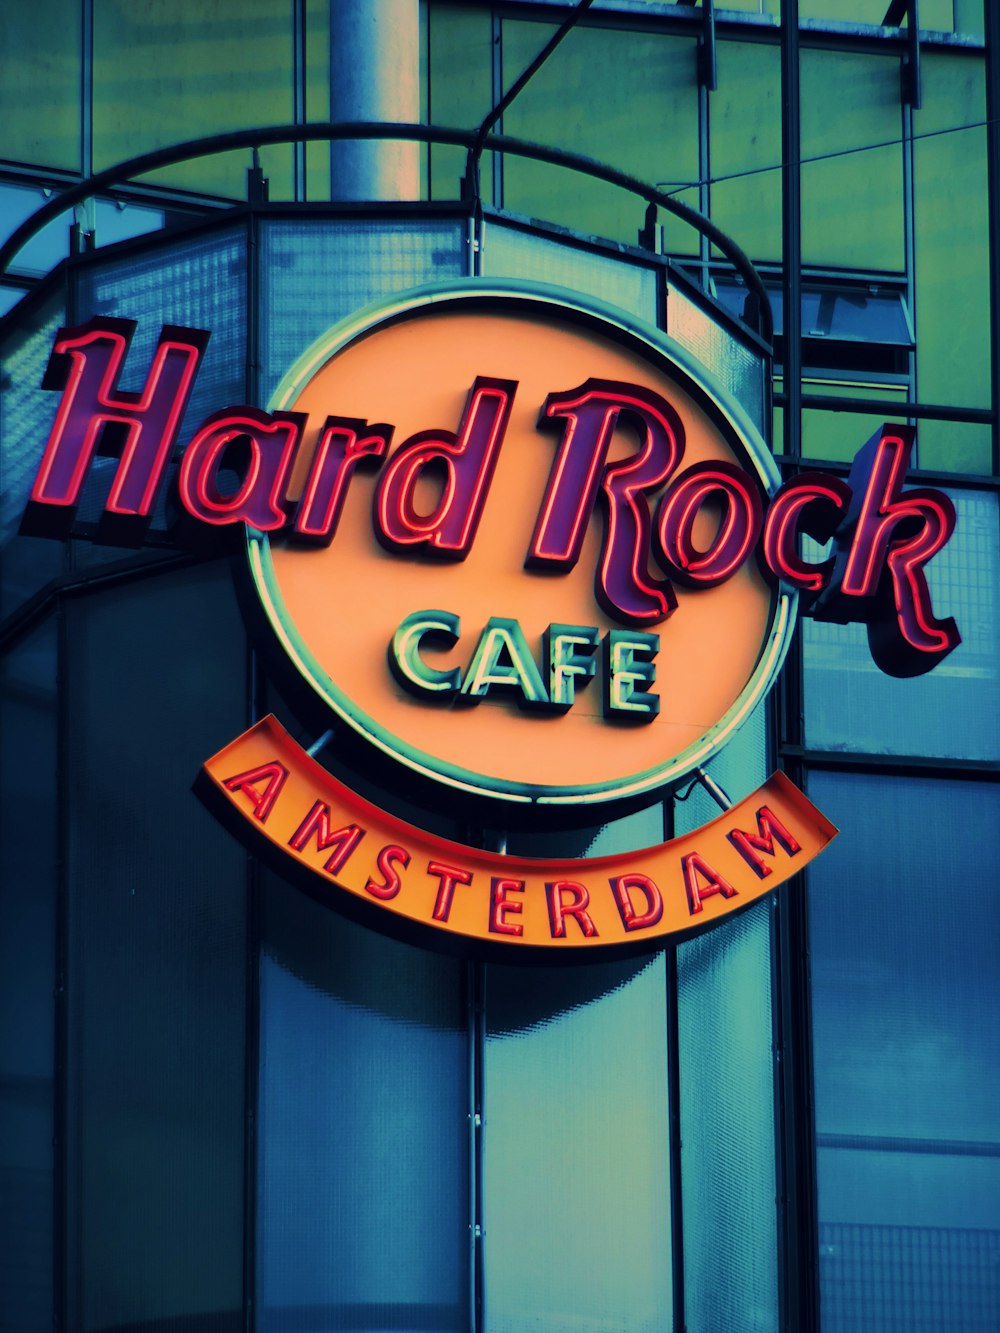 Hard Rock Cafe Amsterdam signage